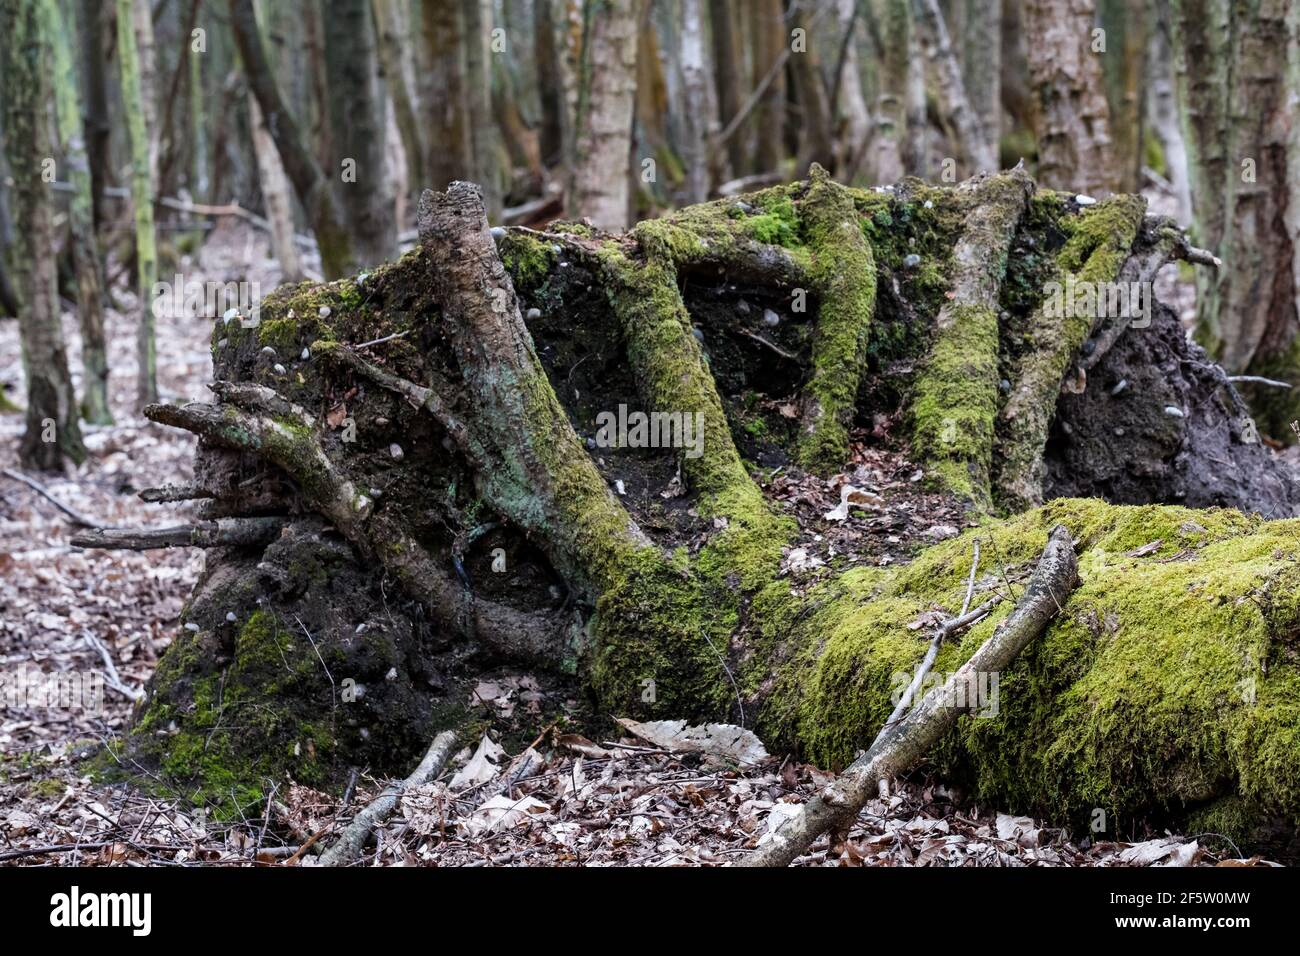 Gran árbol muerto desarraigado ubicado en un área silvestre. Las grandes raíces en la base dan una impresión inquietante a la escena. Foto de stock